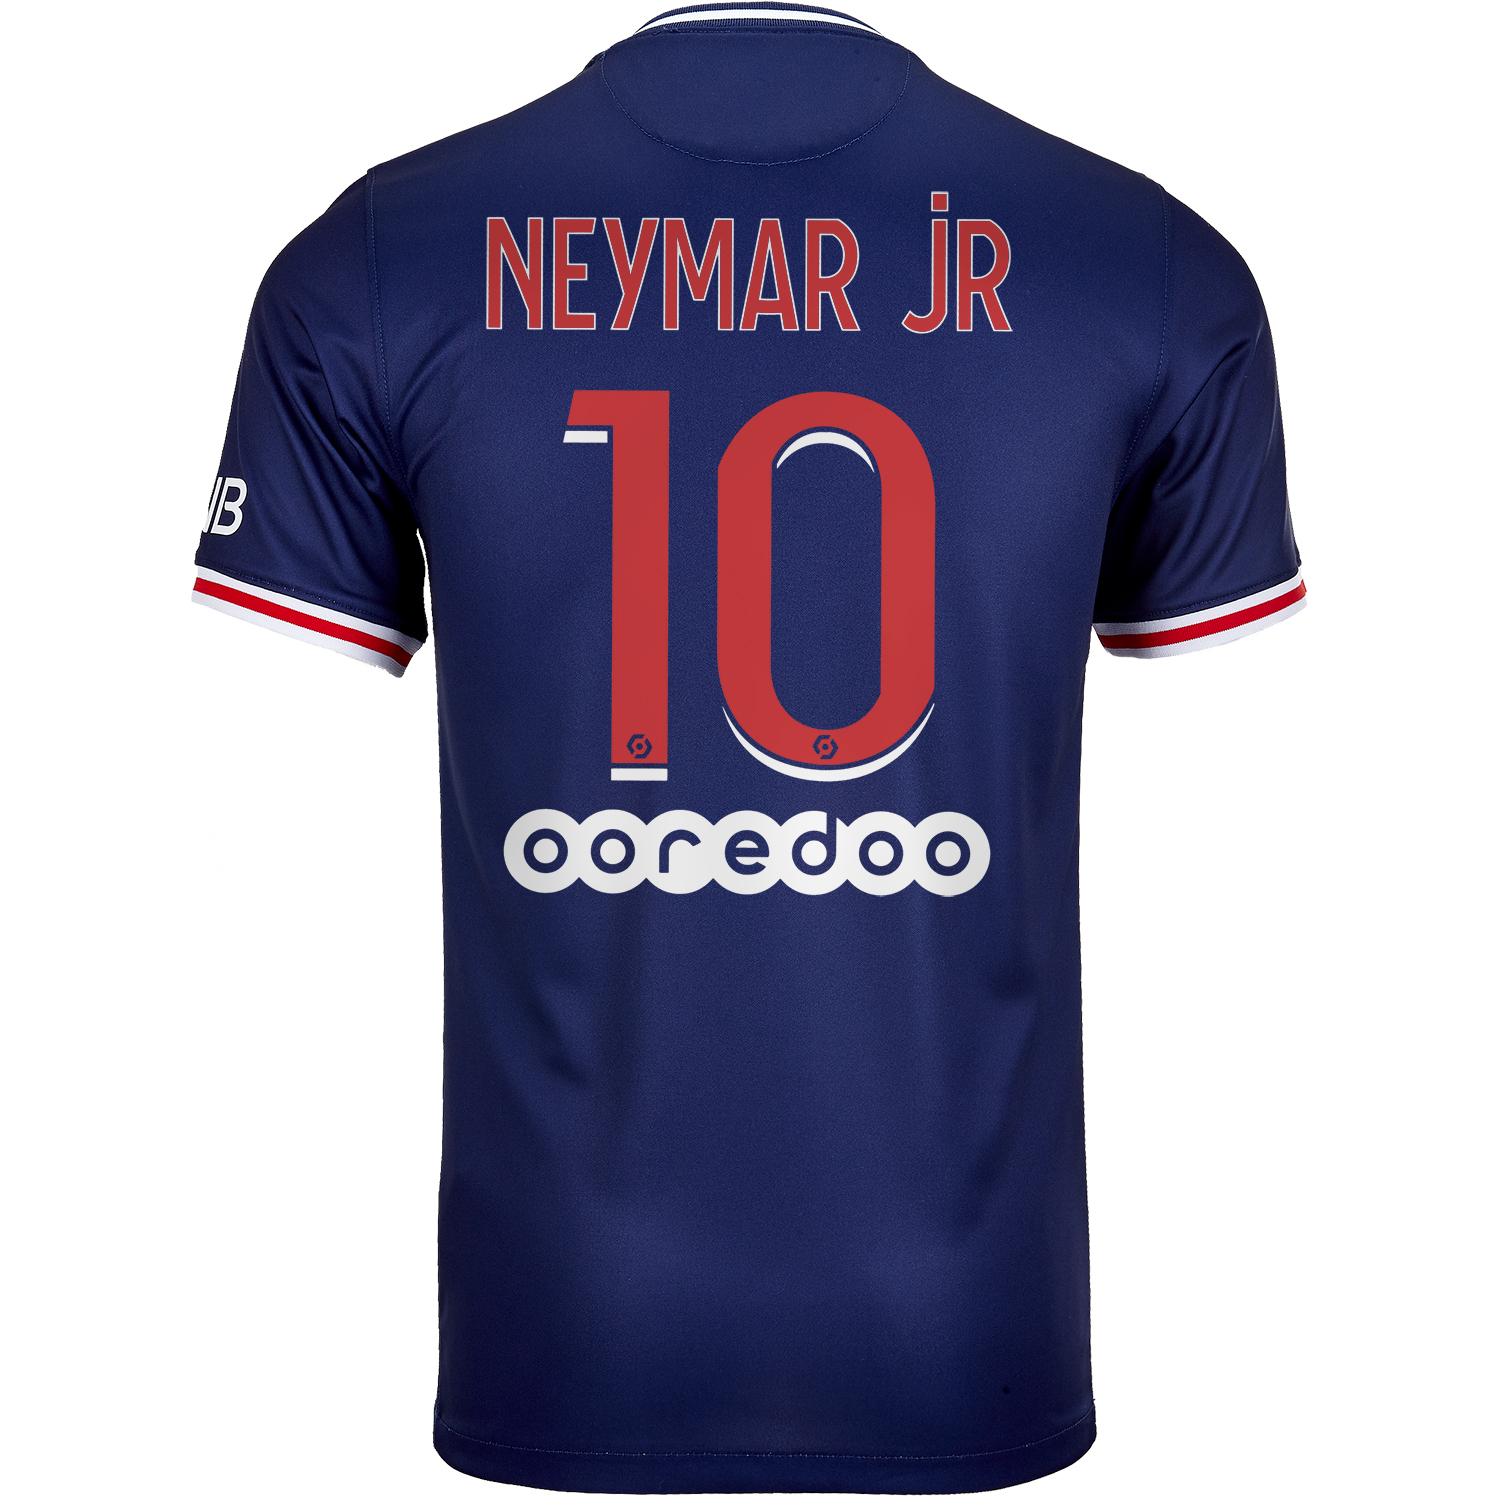 2020/21 Kids Nike Neymar Jr PSG Home Jersey  SoccerPro